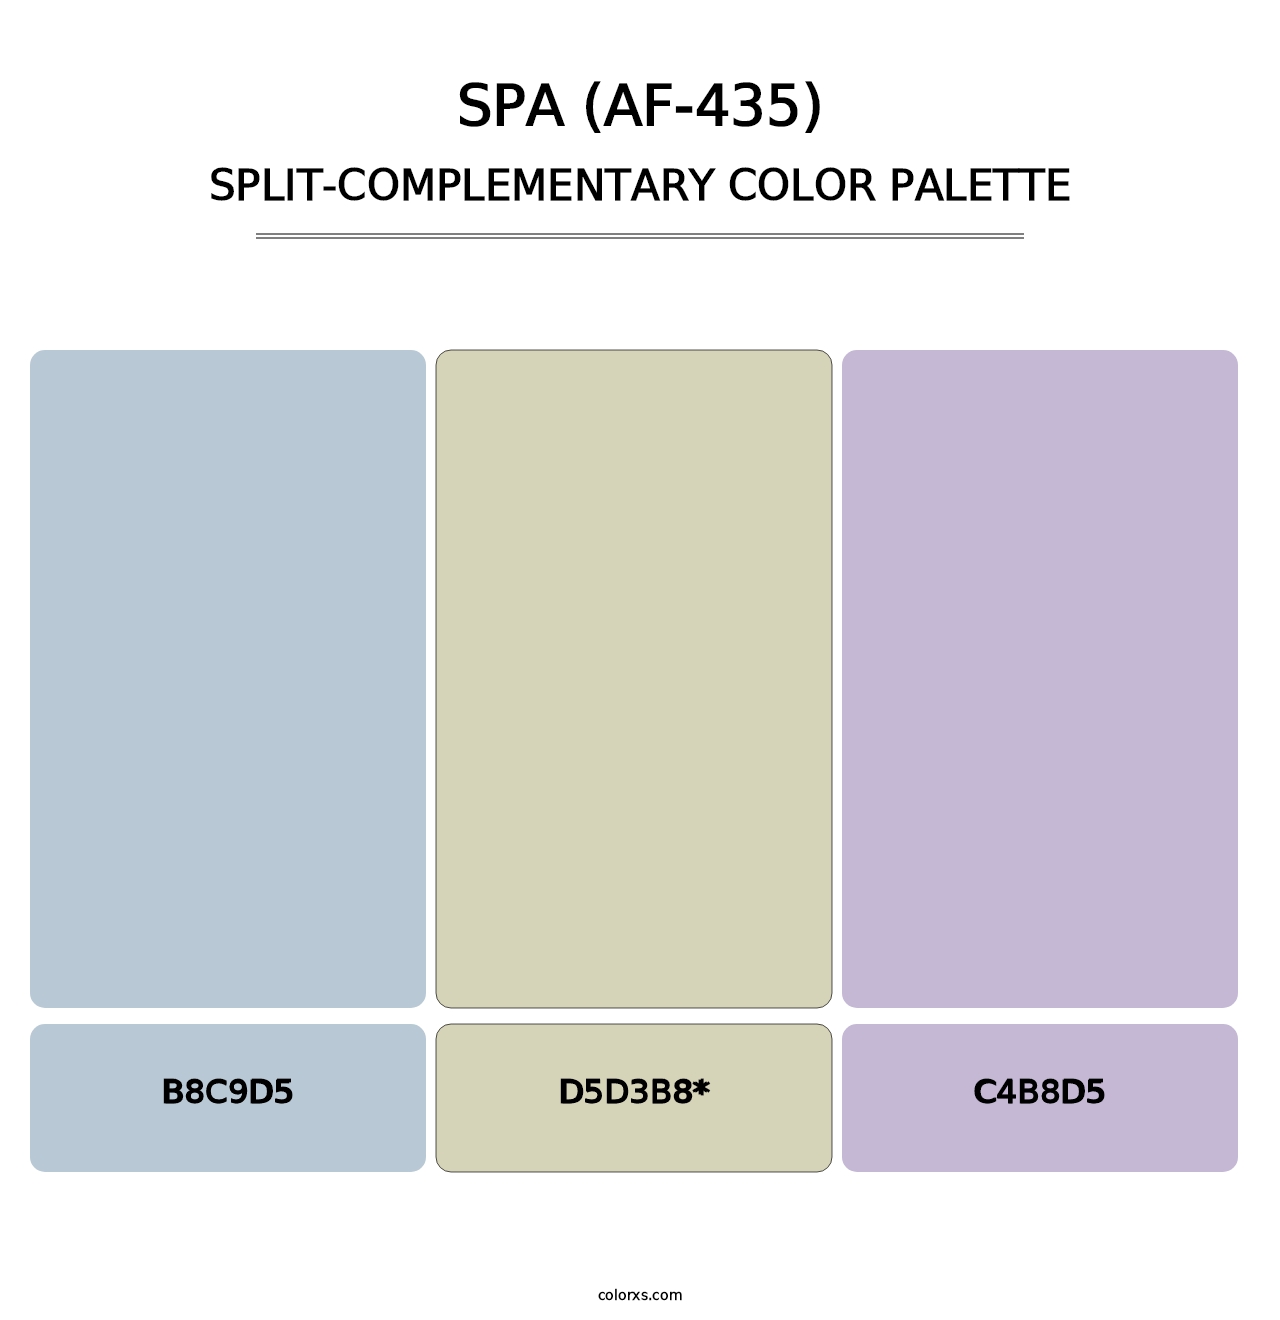 Spa (AF-435) - Split-Complementary Color Palette